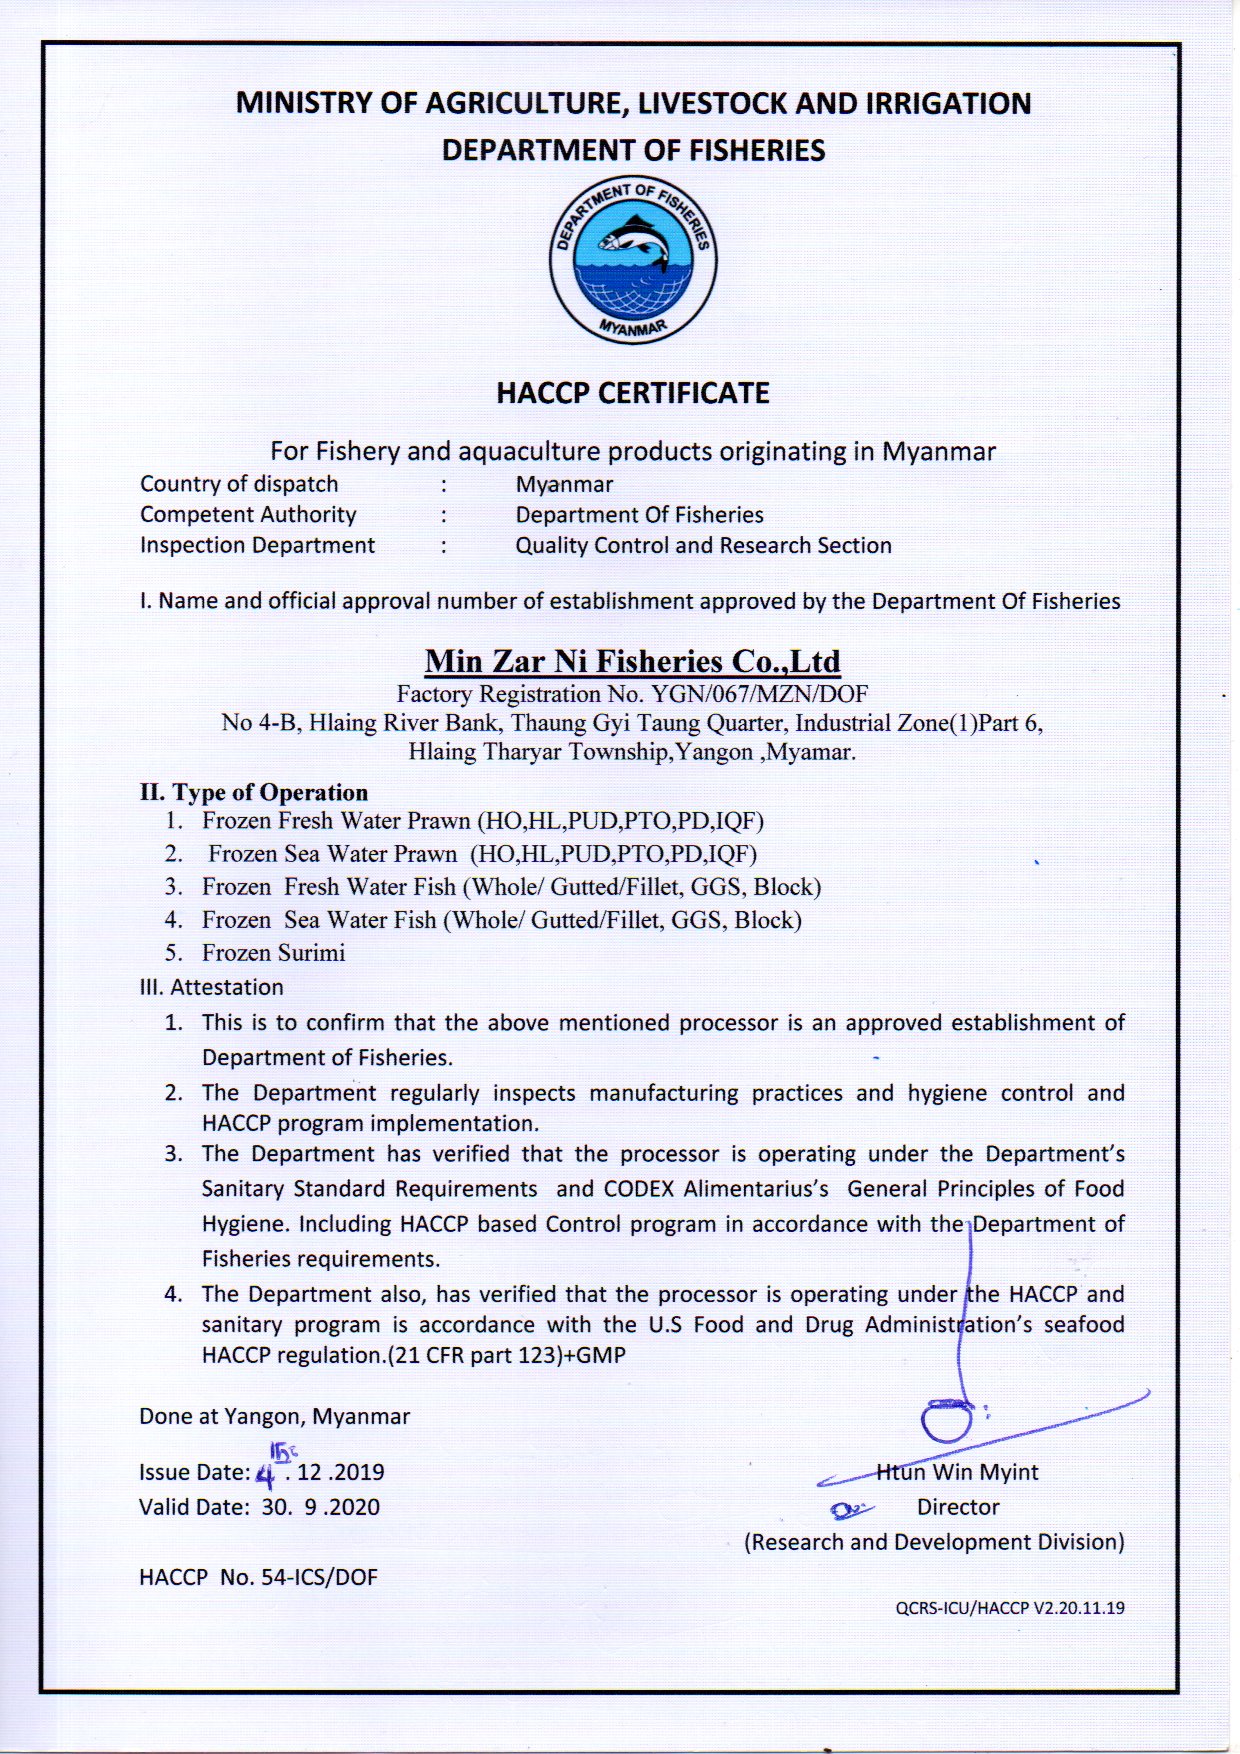 HACCP Certificate No.54-ICSDOF